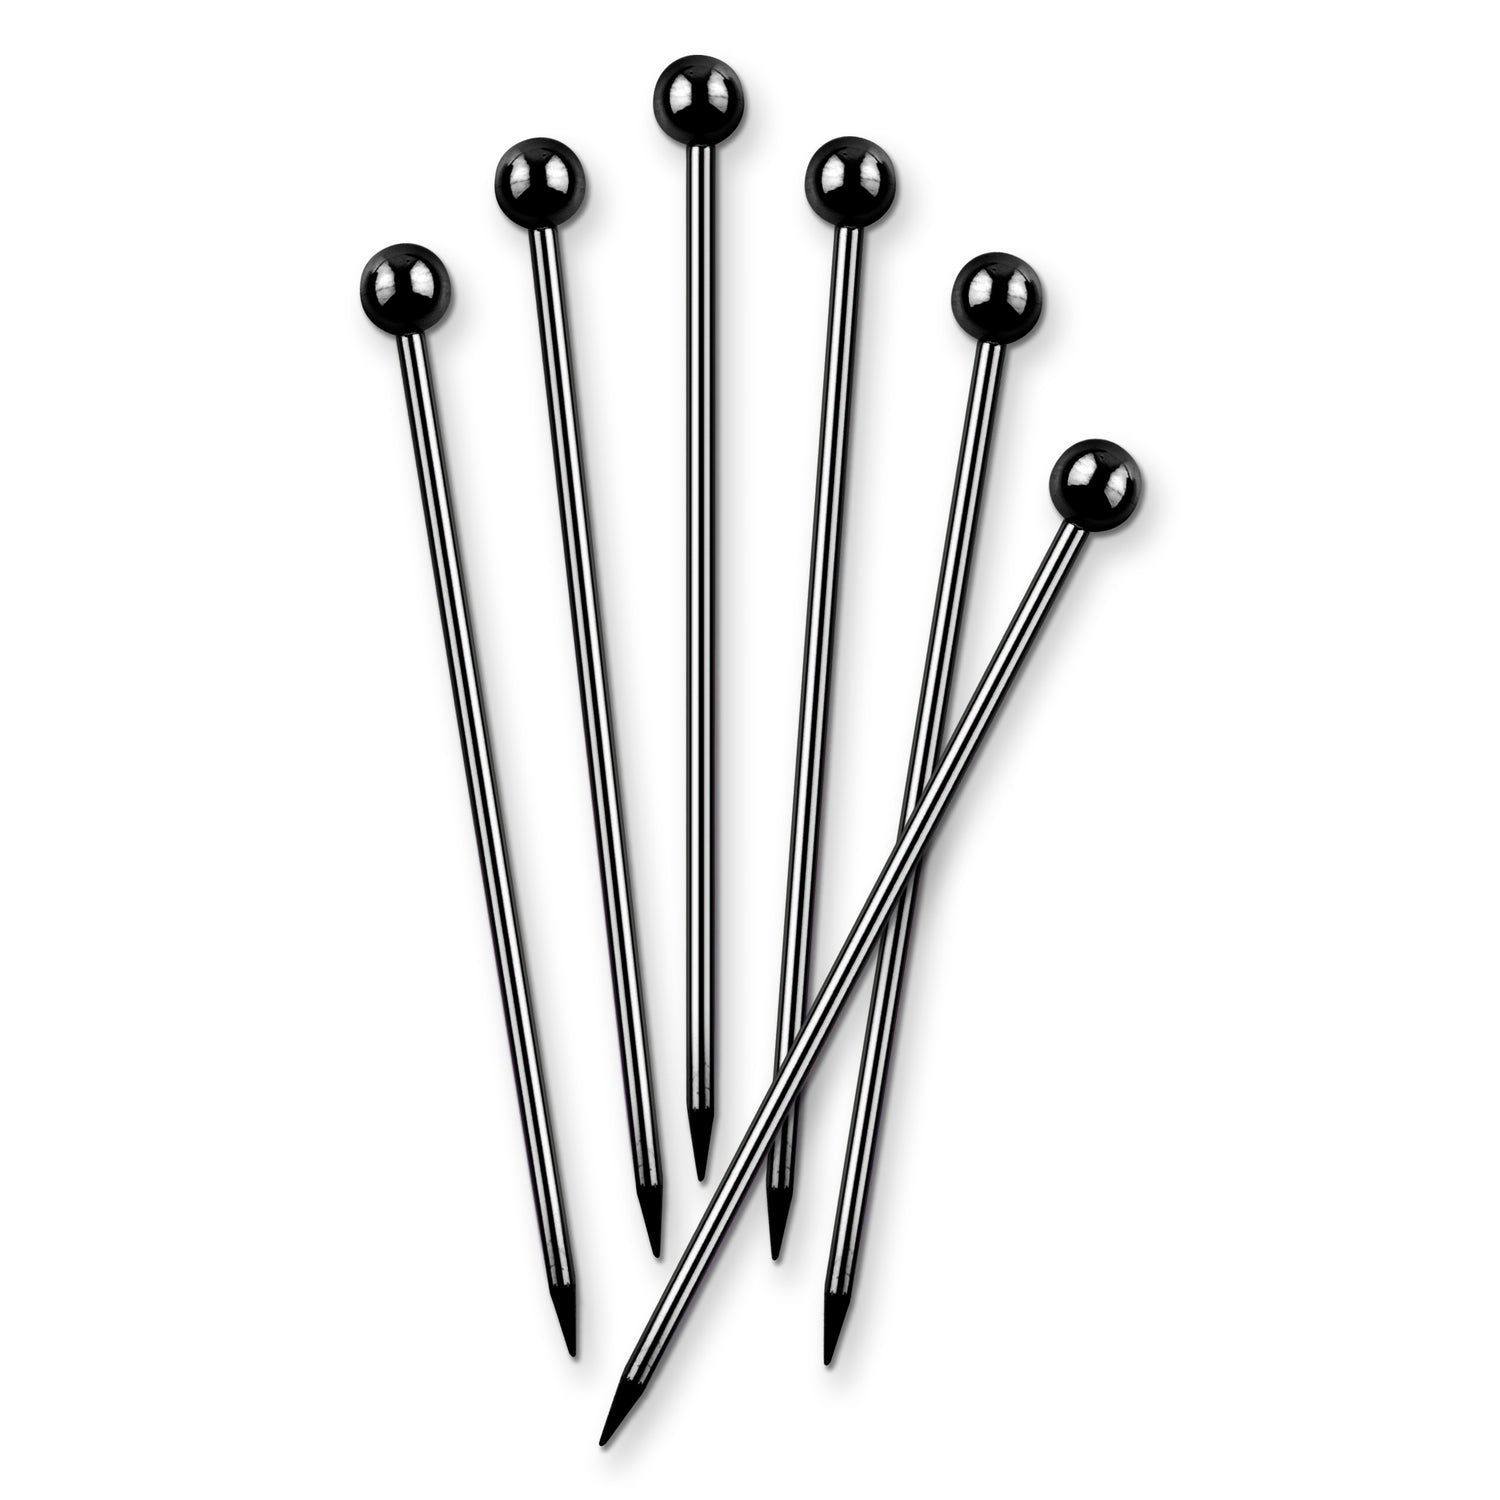 Stainless Steel Cocktail Picks - Black Chrome - Set of 6